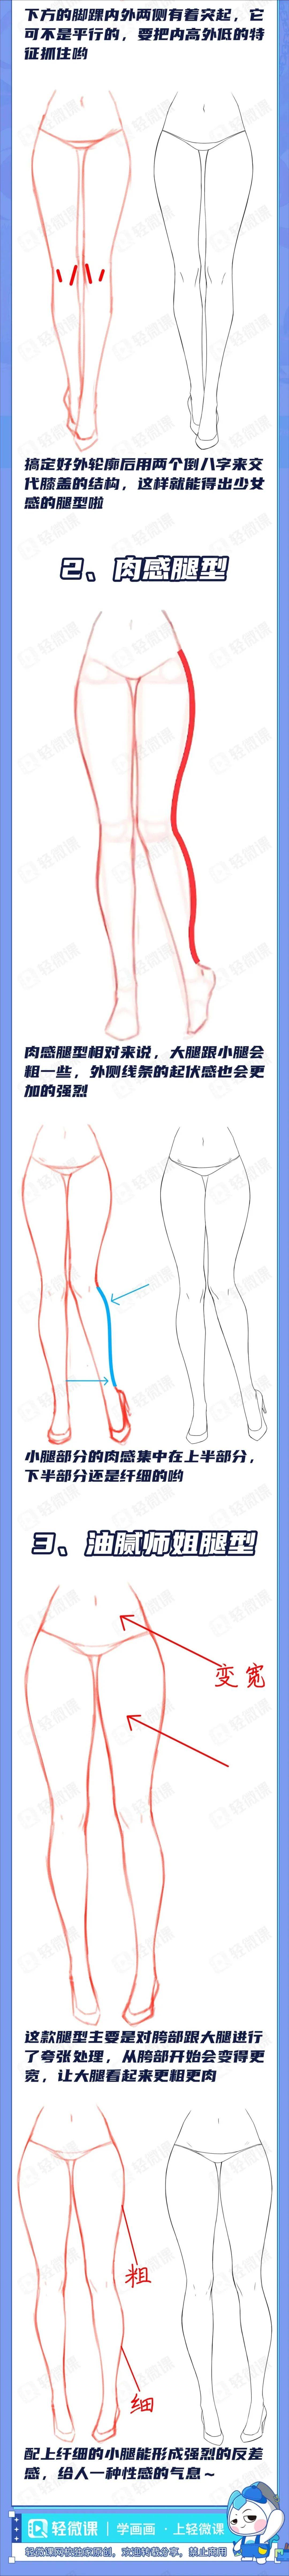 美腿怎么画?动漫人物不同的腿型画法!